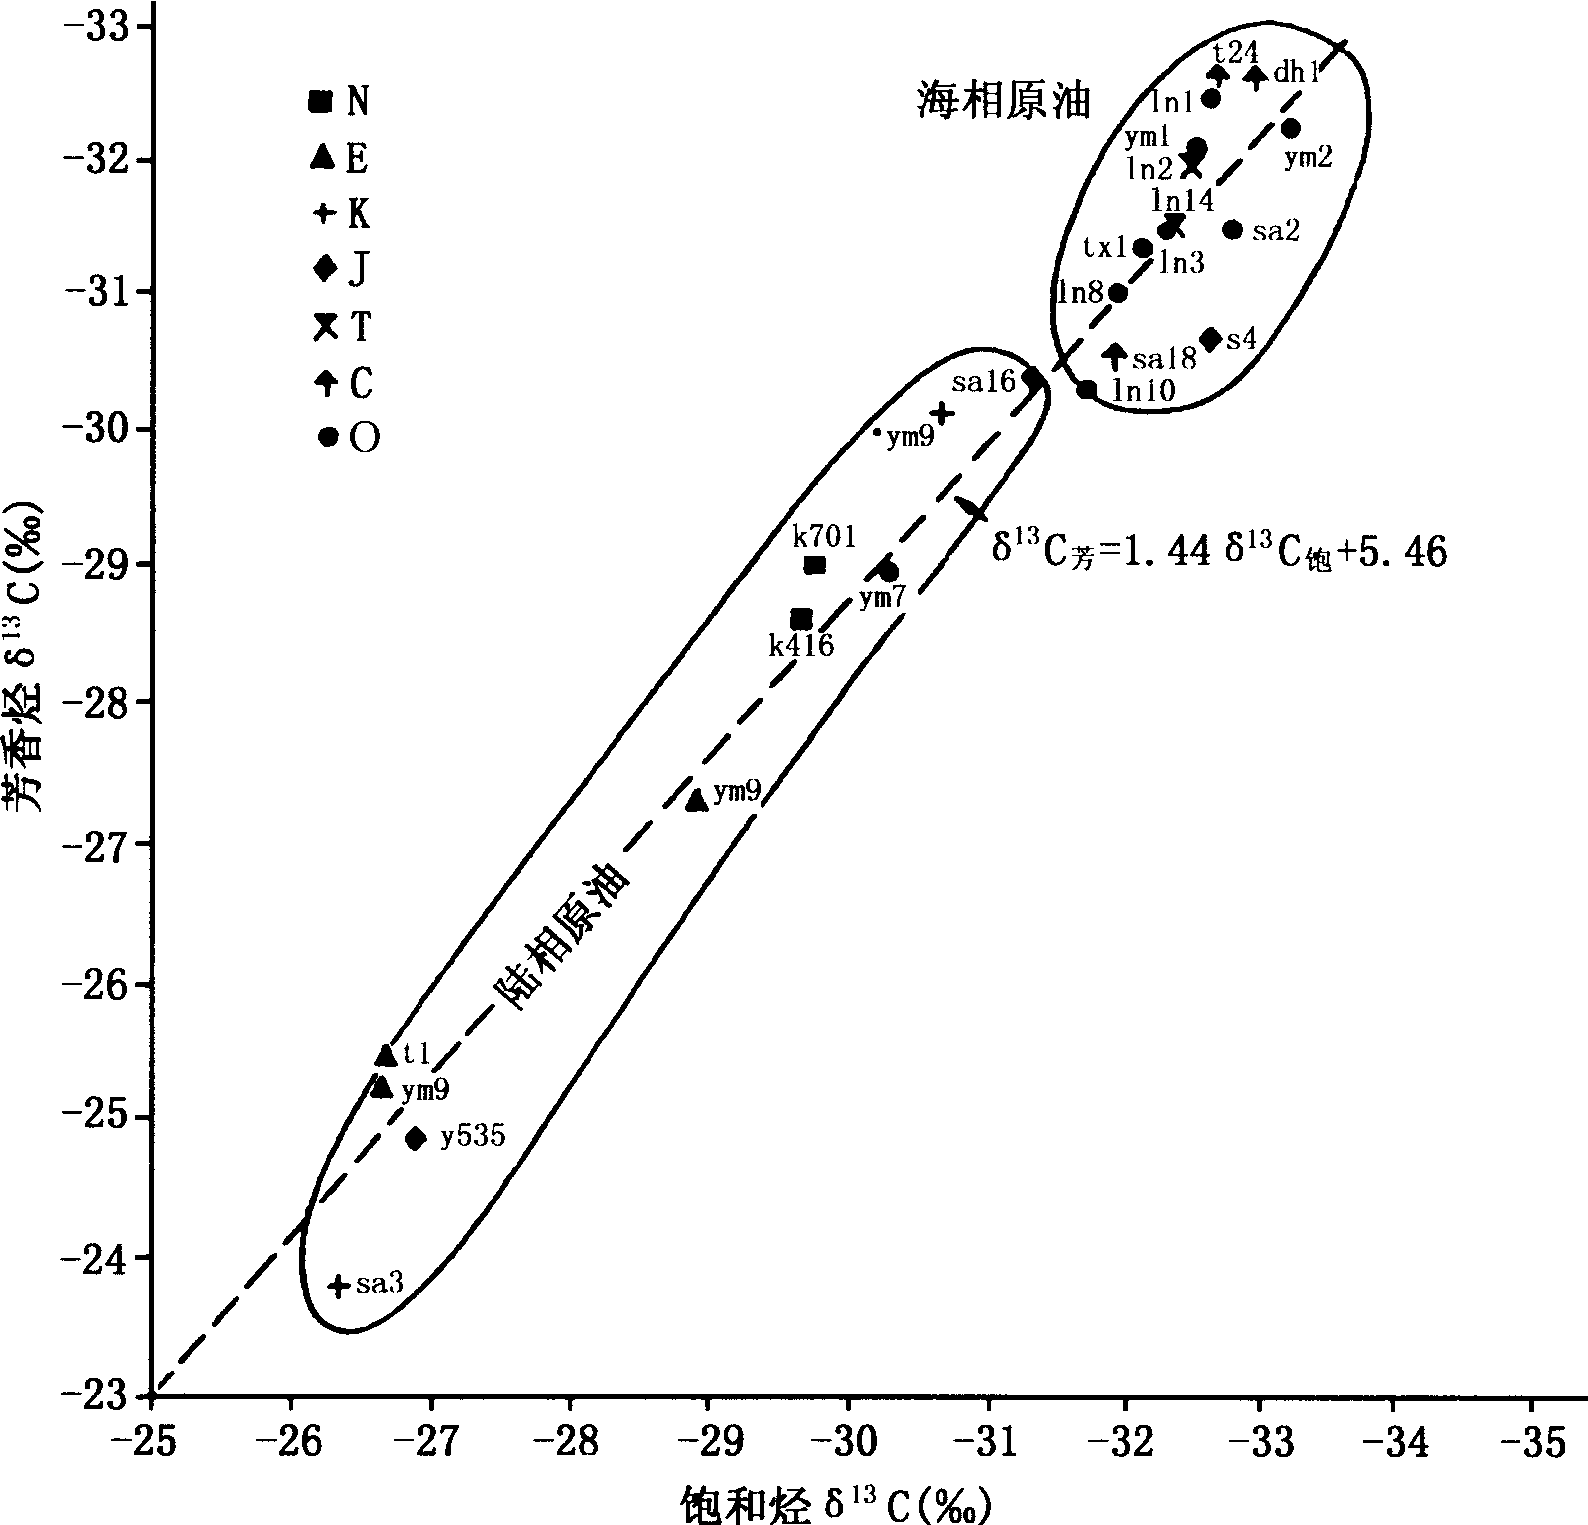 图2—16 塔里木原油研究表明海相油和陆相油似乎并不服从Sofer划分线